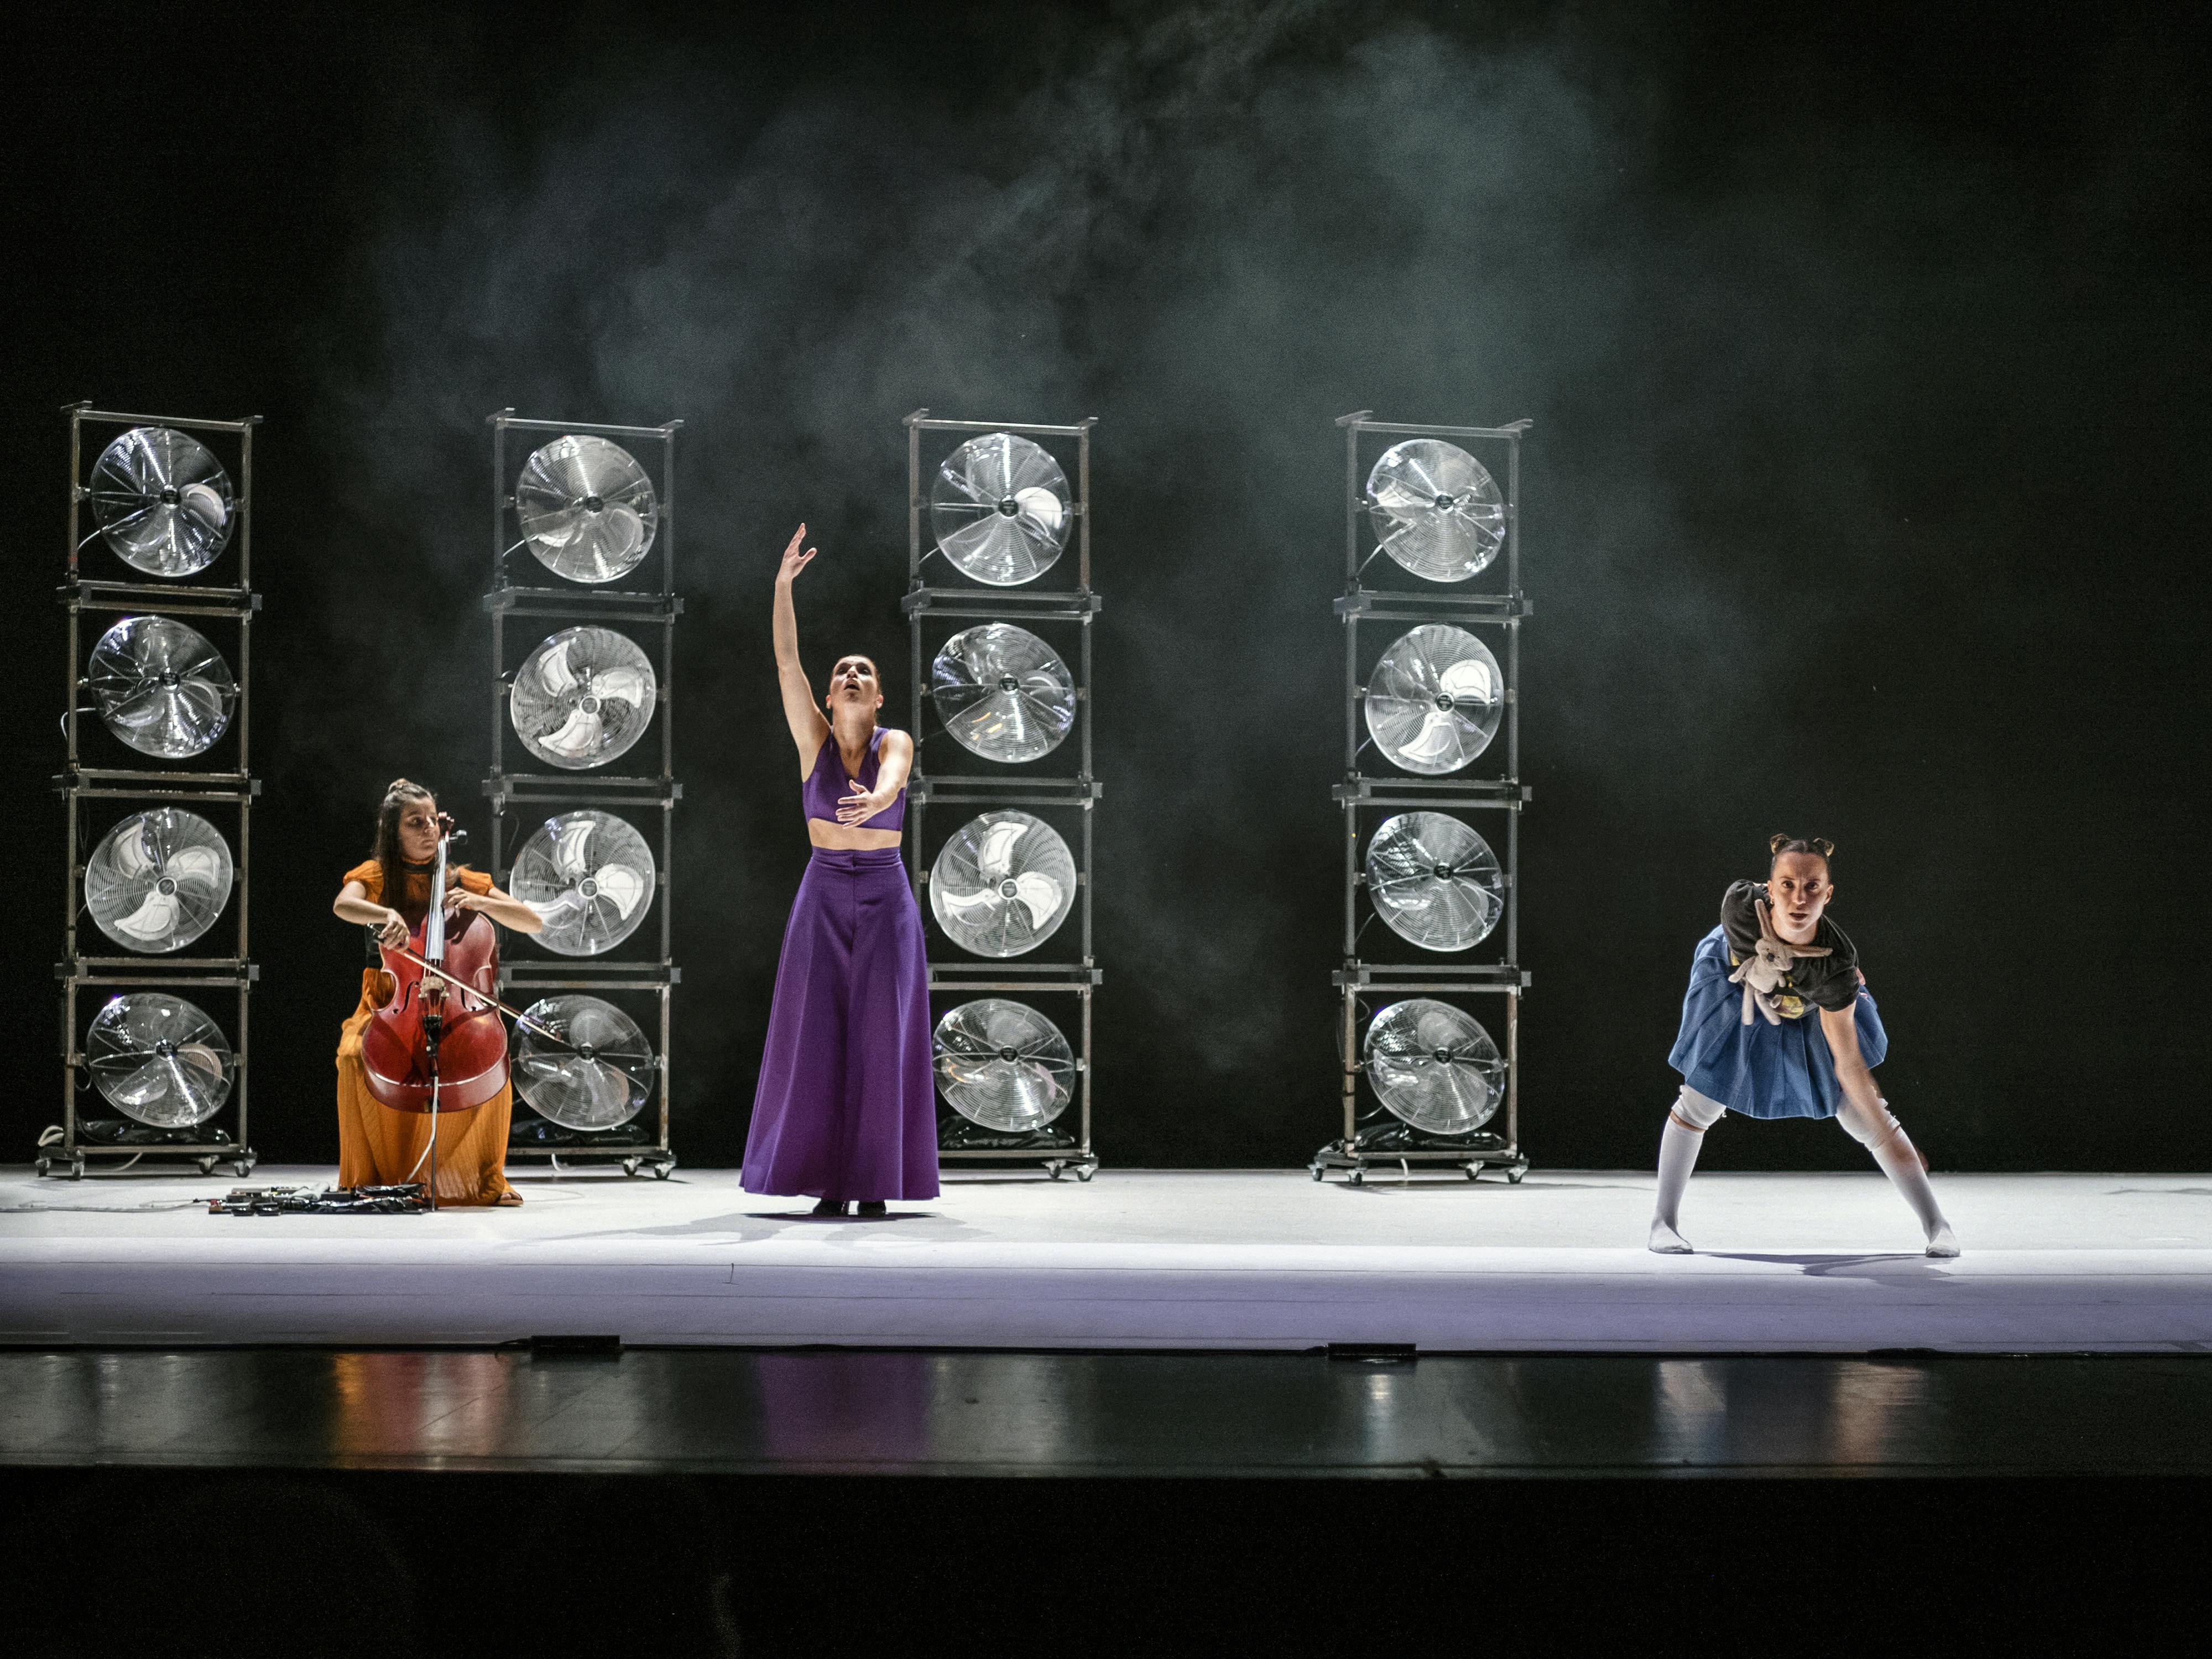 Le tre performer di YouMe, una violoncellista, una danzatrice di flamenco e una proveniente dall'hip hop, durante la performance. Dietro di loro quattro colonne di ventilatori impilati tra loro e del fumo scenico sullo sfondo buio.